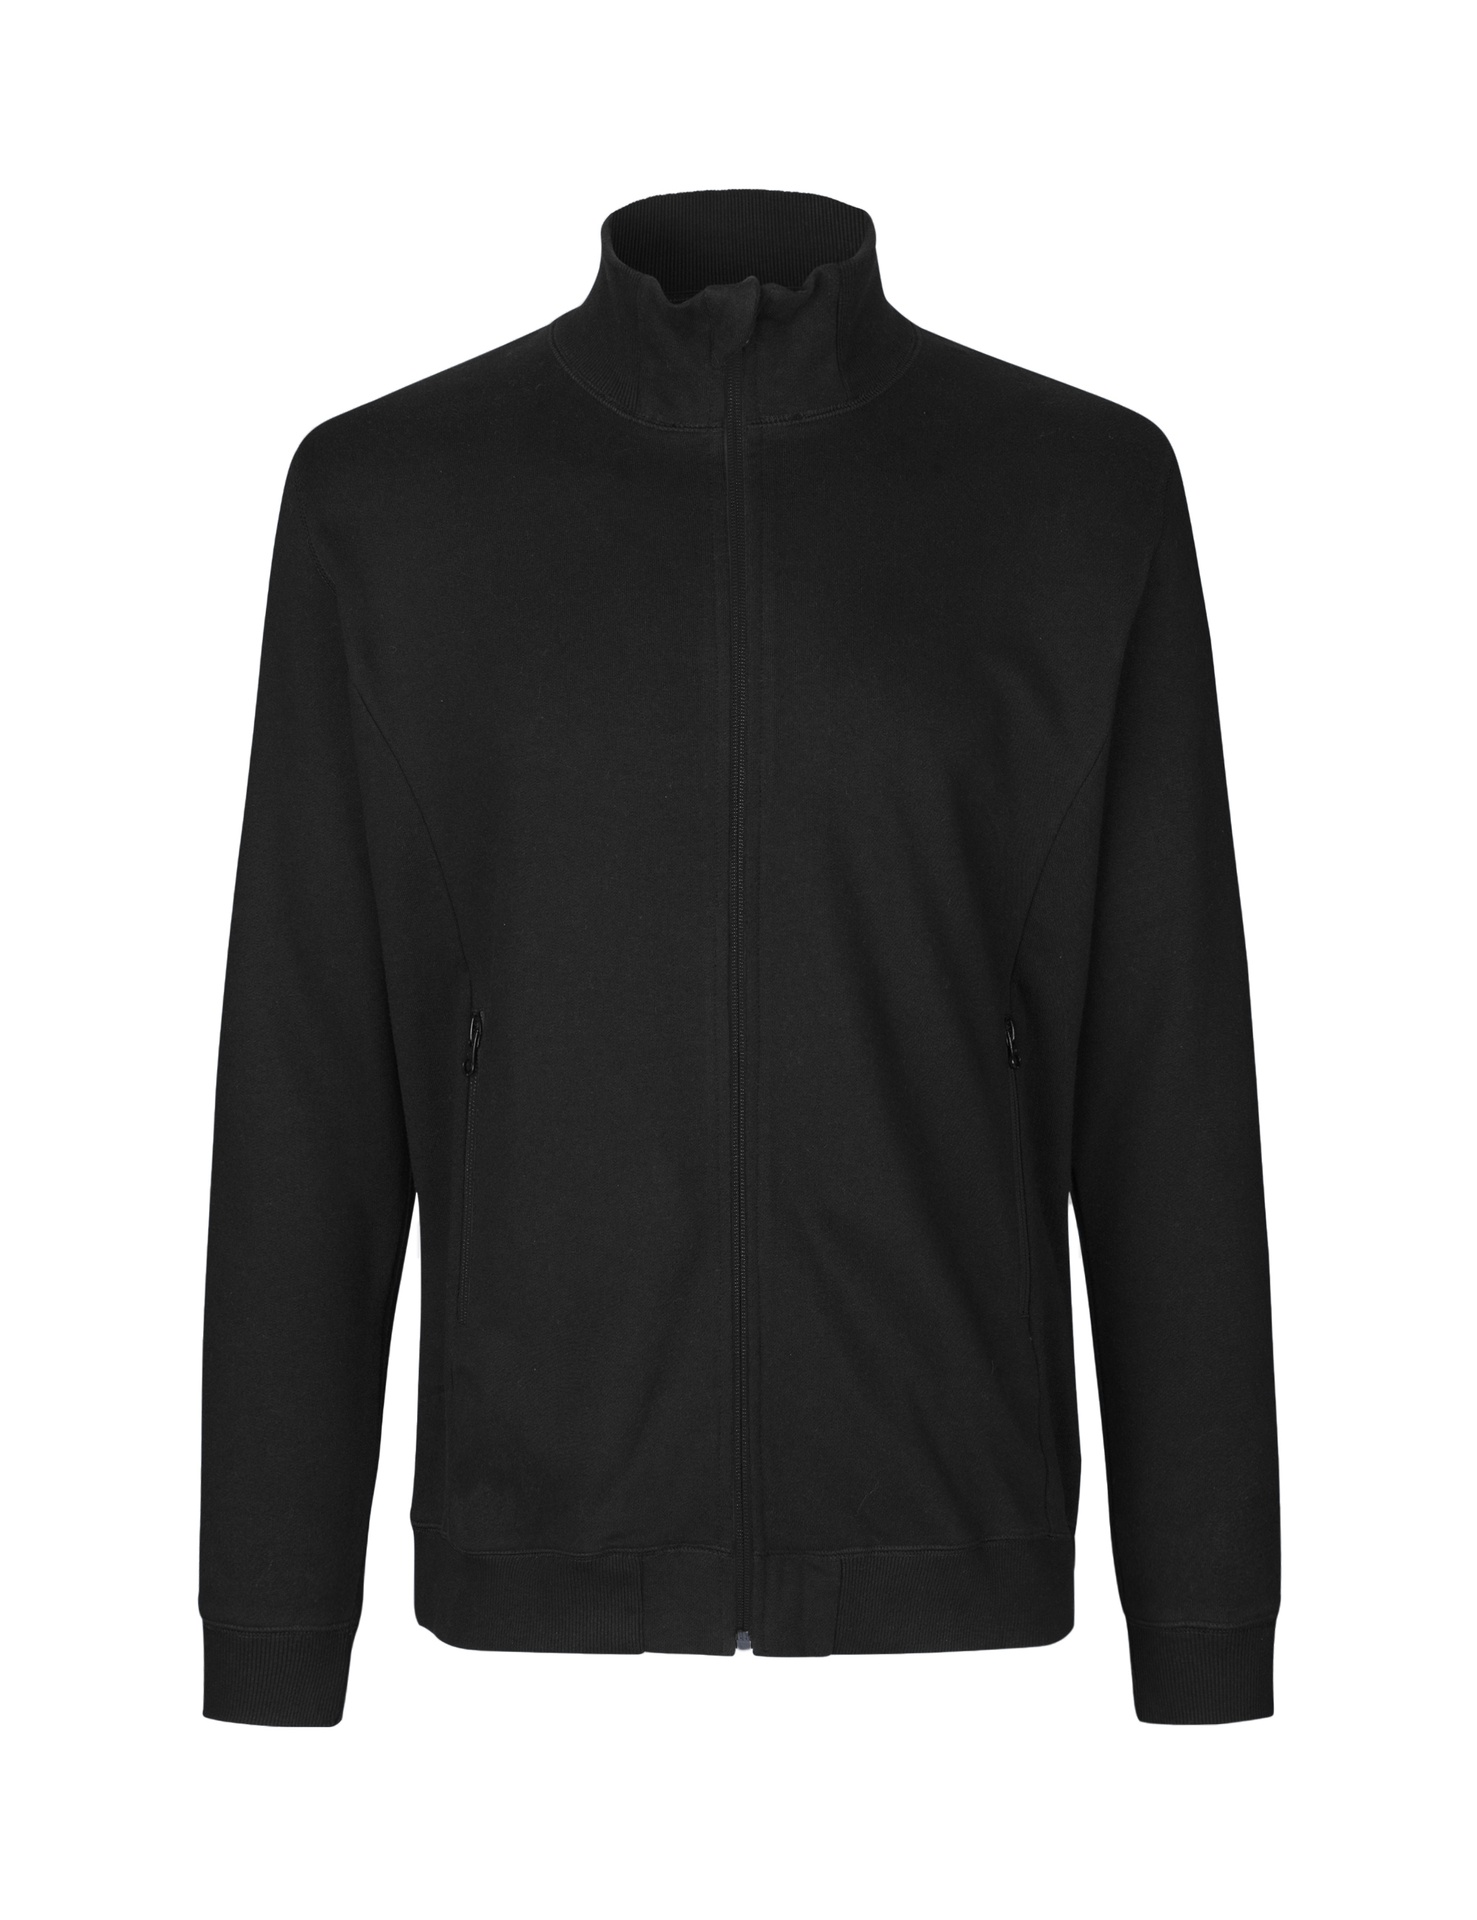 [PR/03633] Unisex High Neck Jacket (Black 03, XL)